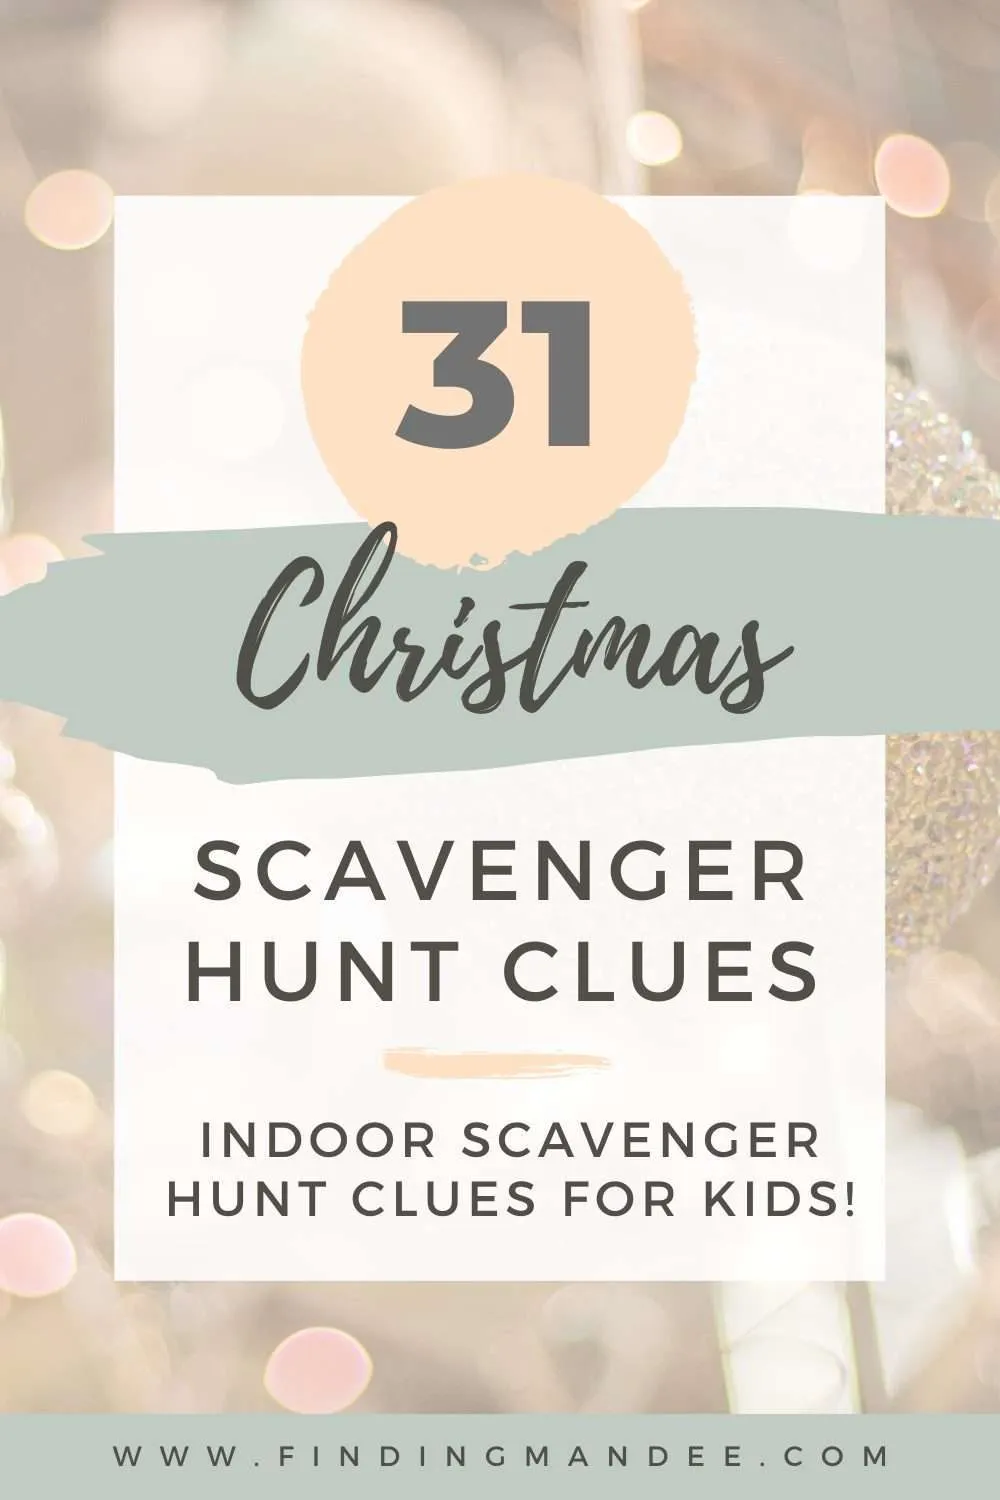 31 Indoor Christmas Scavenger Hunt Clues for Kids | Finding Mandee